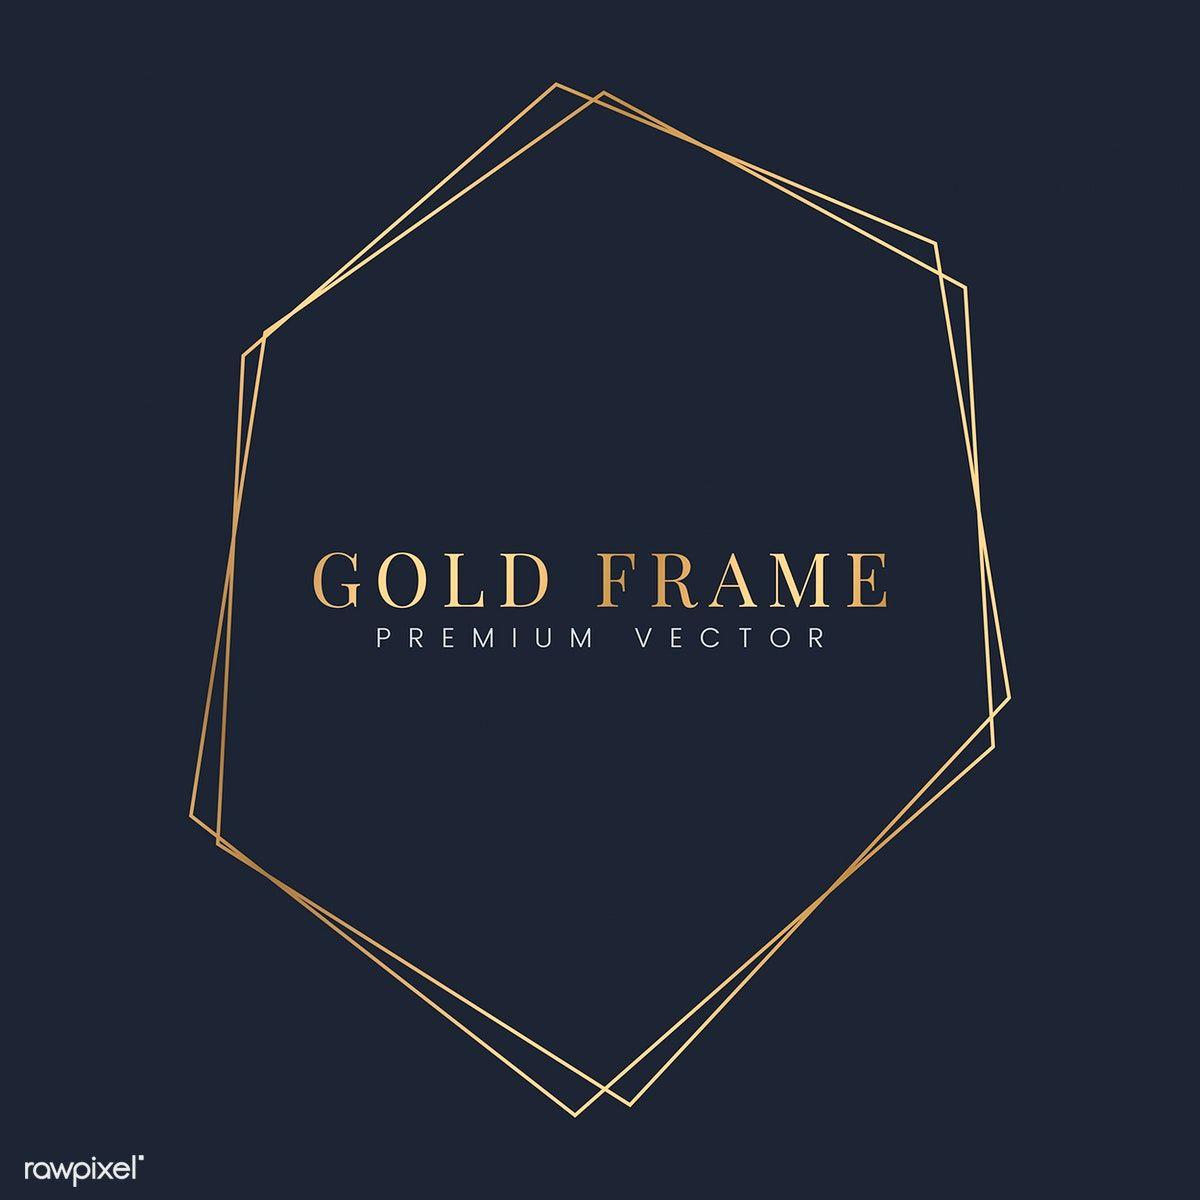 Hexagon Shaped Gold Auto Logo - Golden hexagon frame template vector. Free stock vector